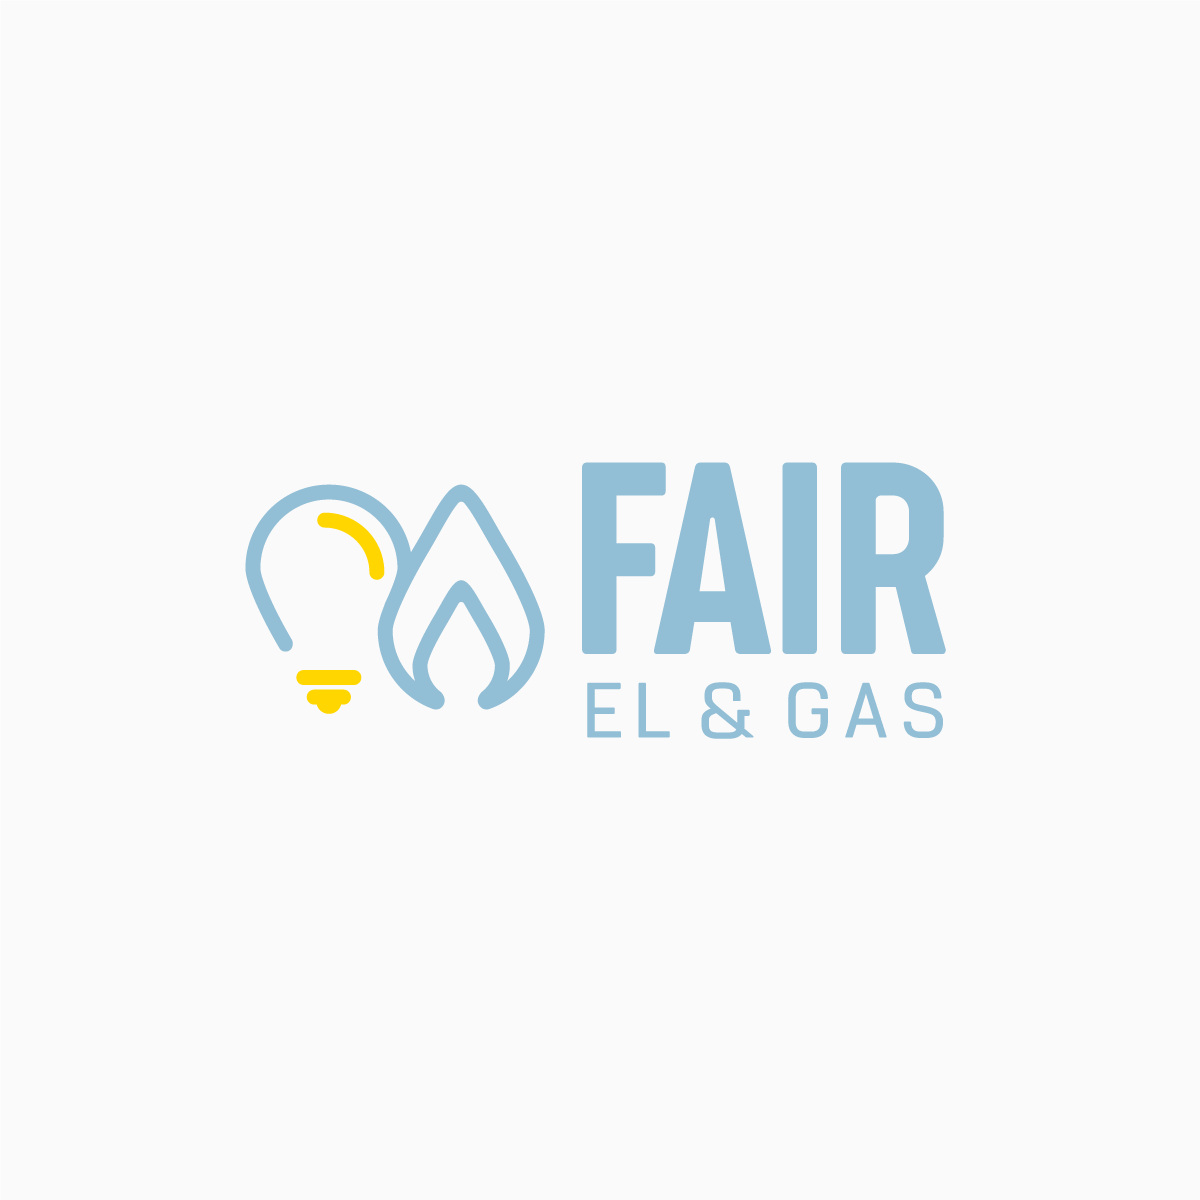 Fair el & gas logo